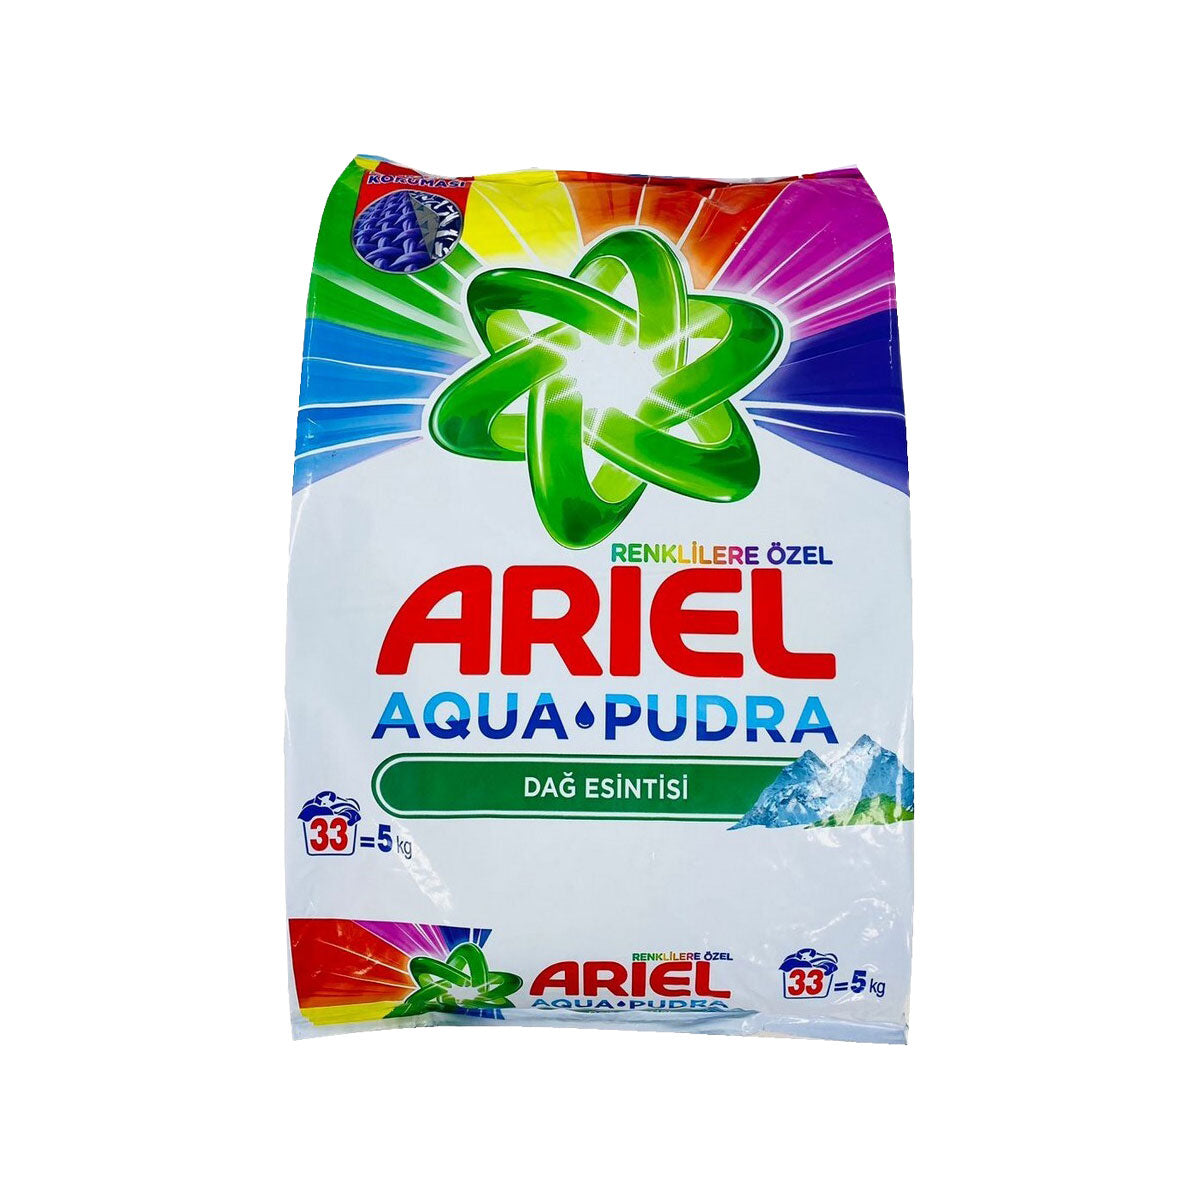  Ariel, con Ultra Oxi, detergente en polvo para ropa